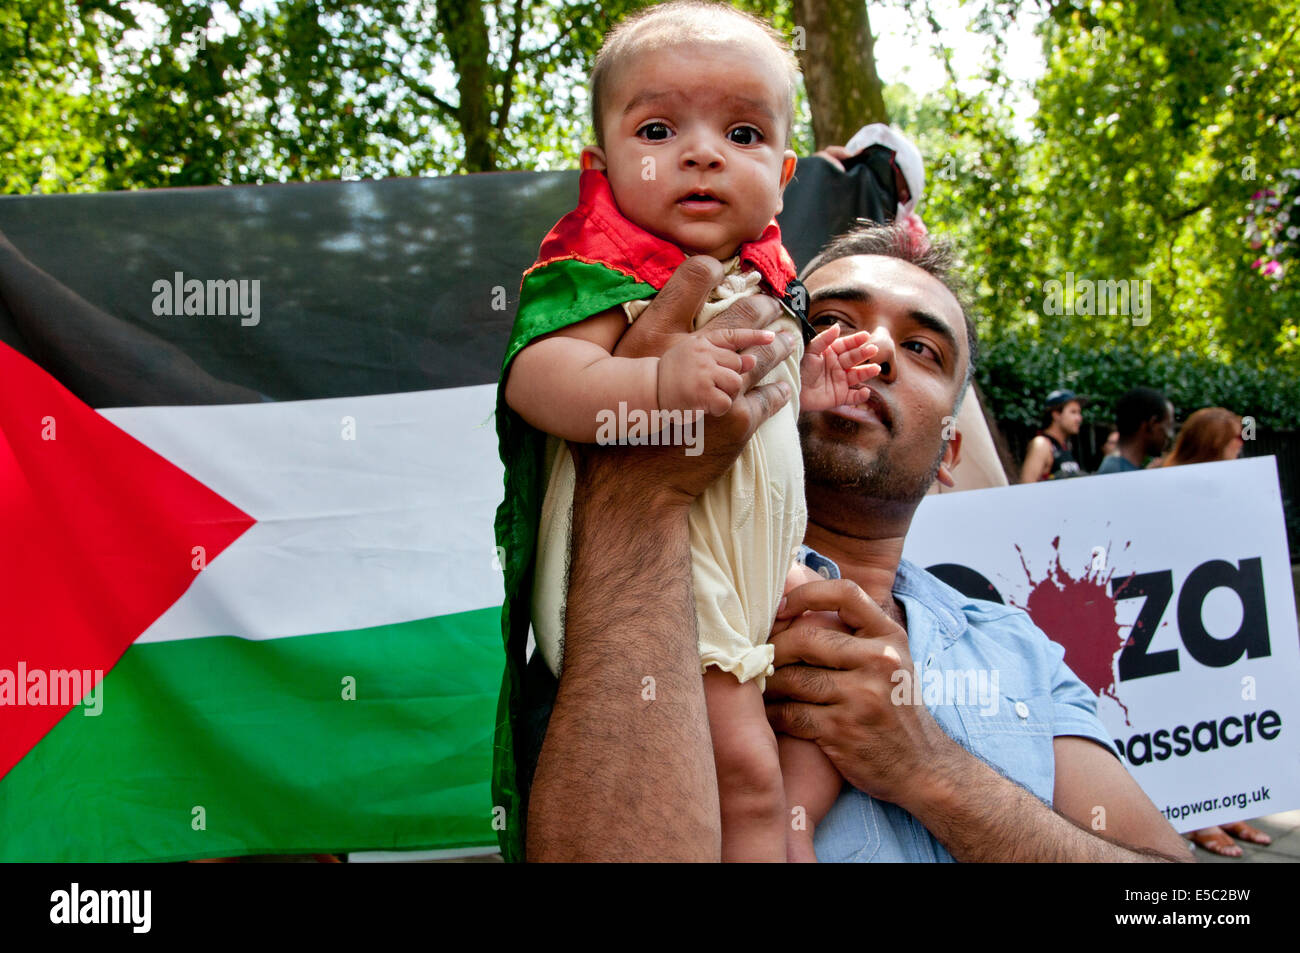 La dimostrazione contro il bombardamento israeliano della Striscia di Gaza, 26.07.2014. Un giovane bambino avvolto in una bandiera palestinese è detenuto da suo padre. Foto Stock